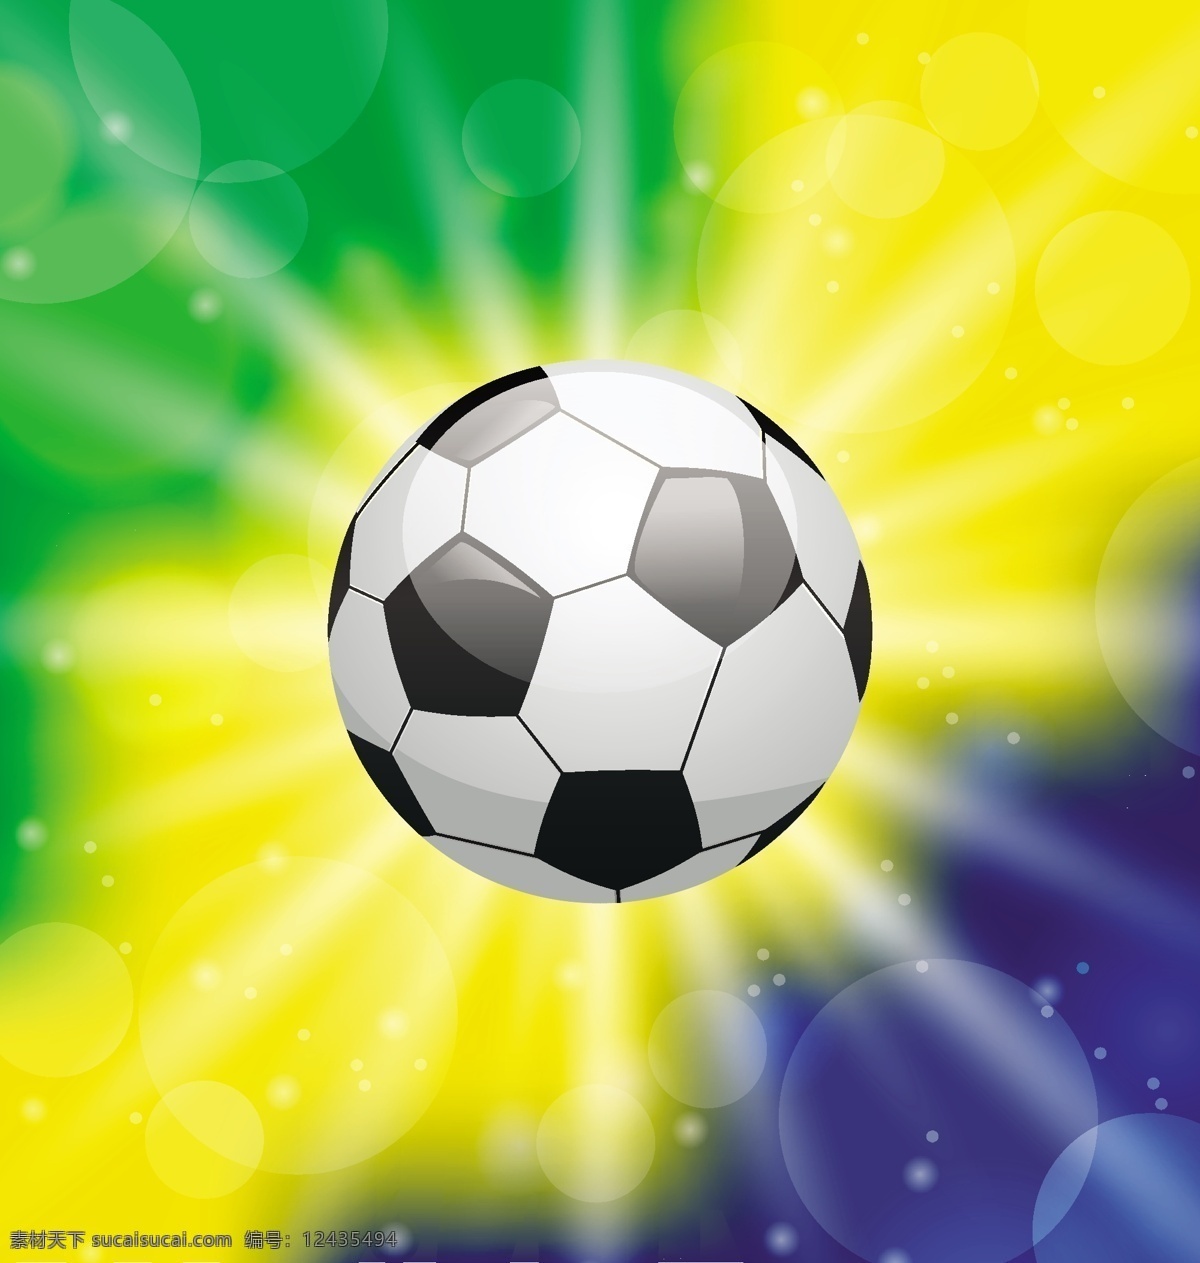 光斑与足球 光斑 足球 模板下载 运动 世界杯 体育运动 生活百科 矢量素材 黄色